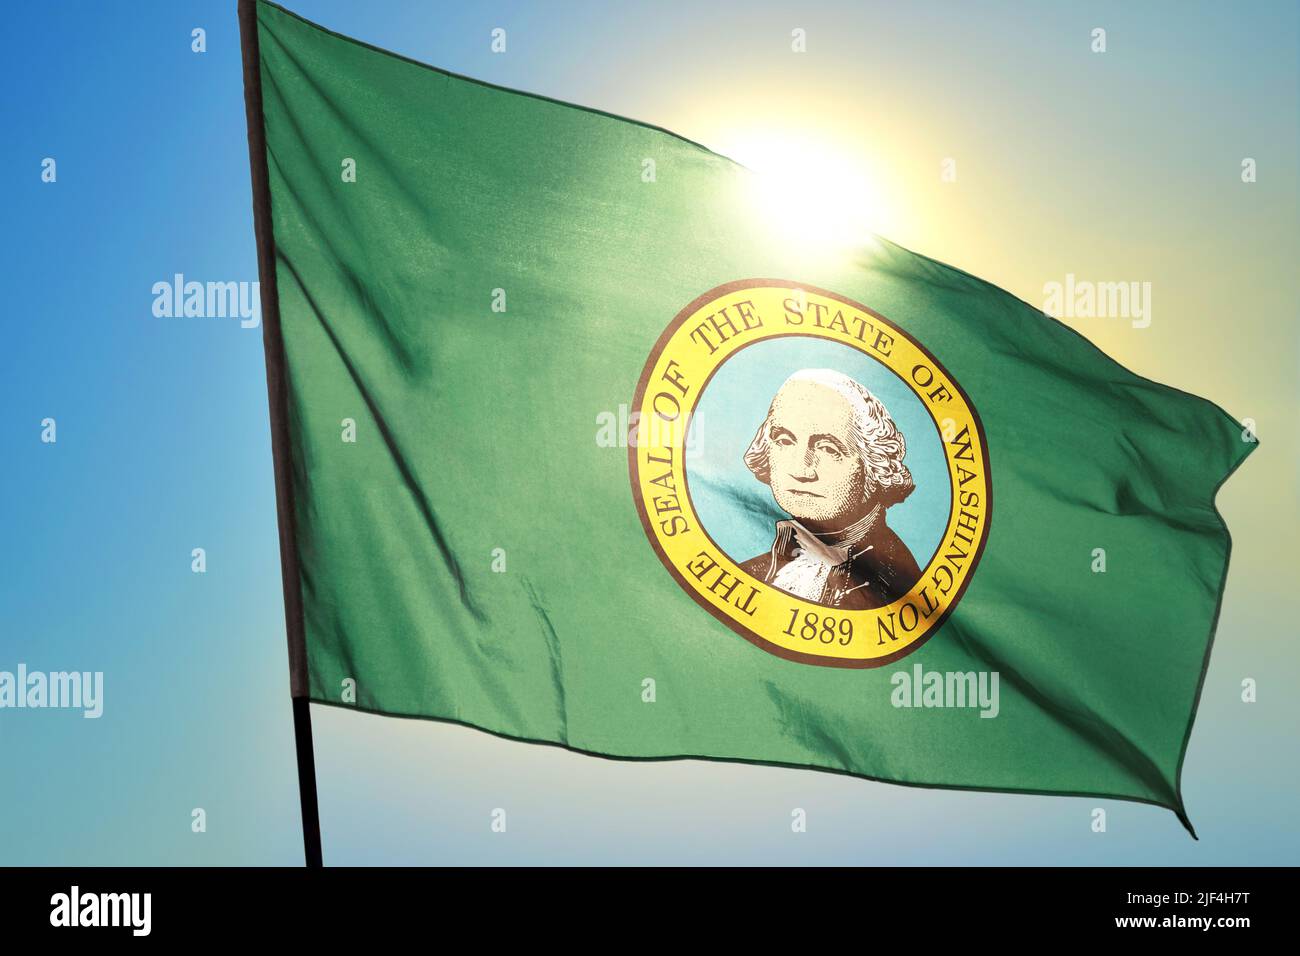 Washington state of United States flag waving on the wind Stock Photo